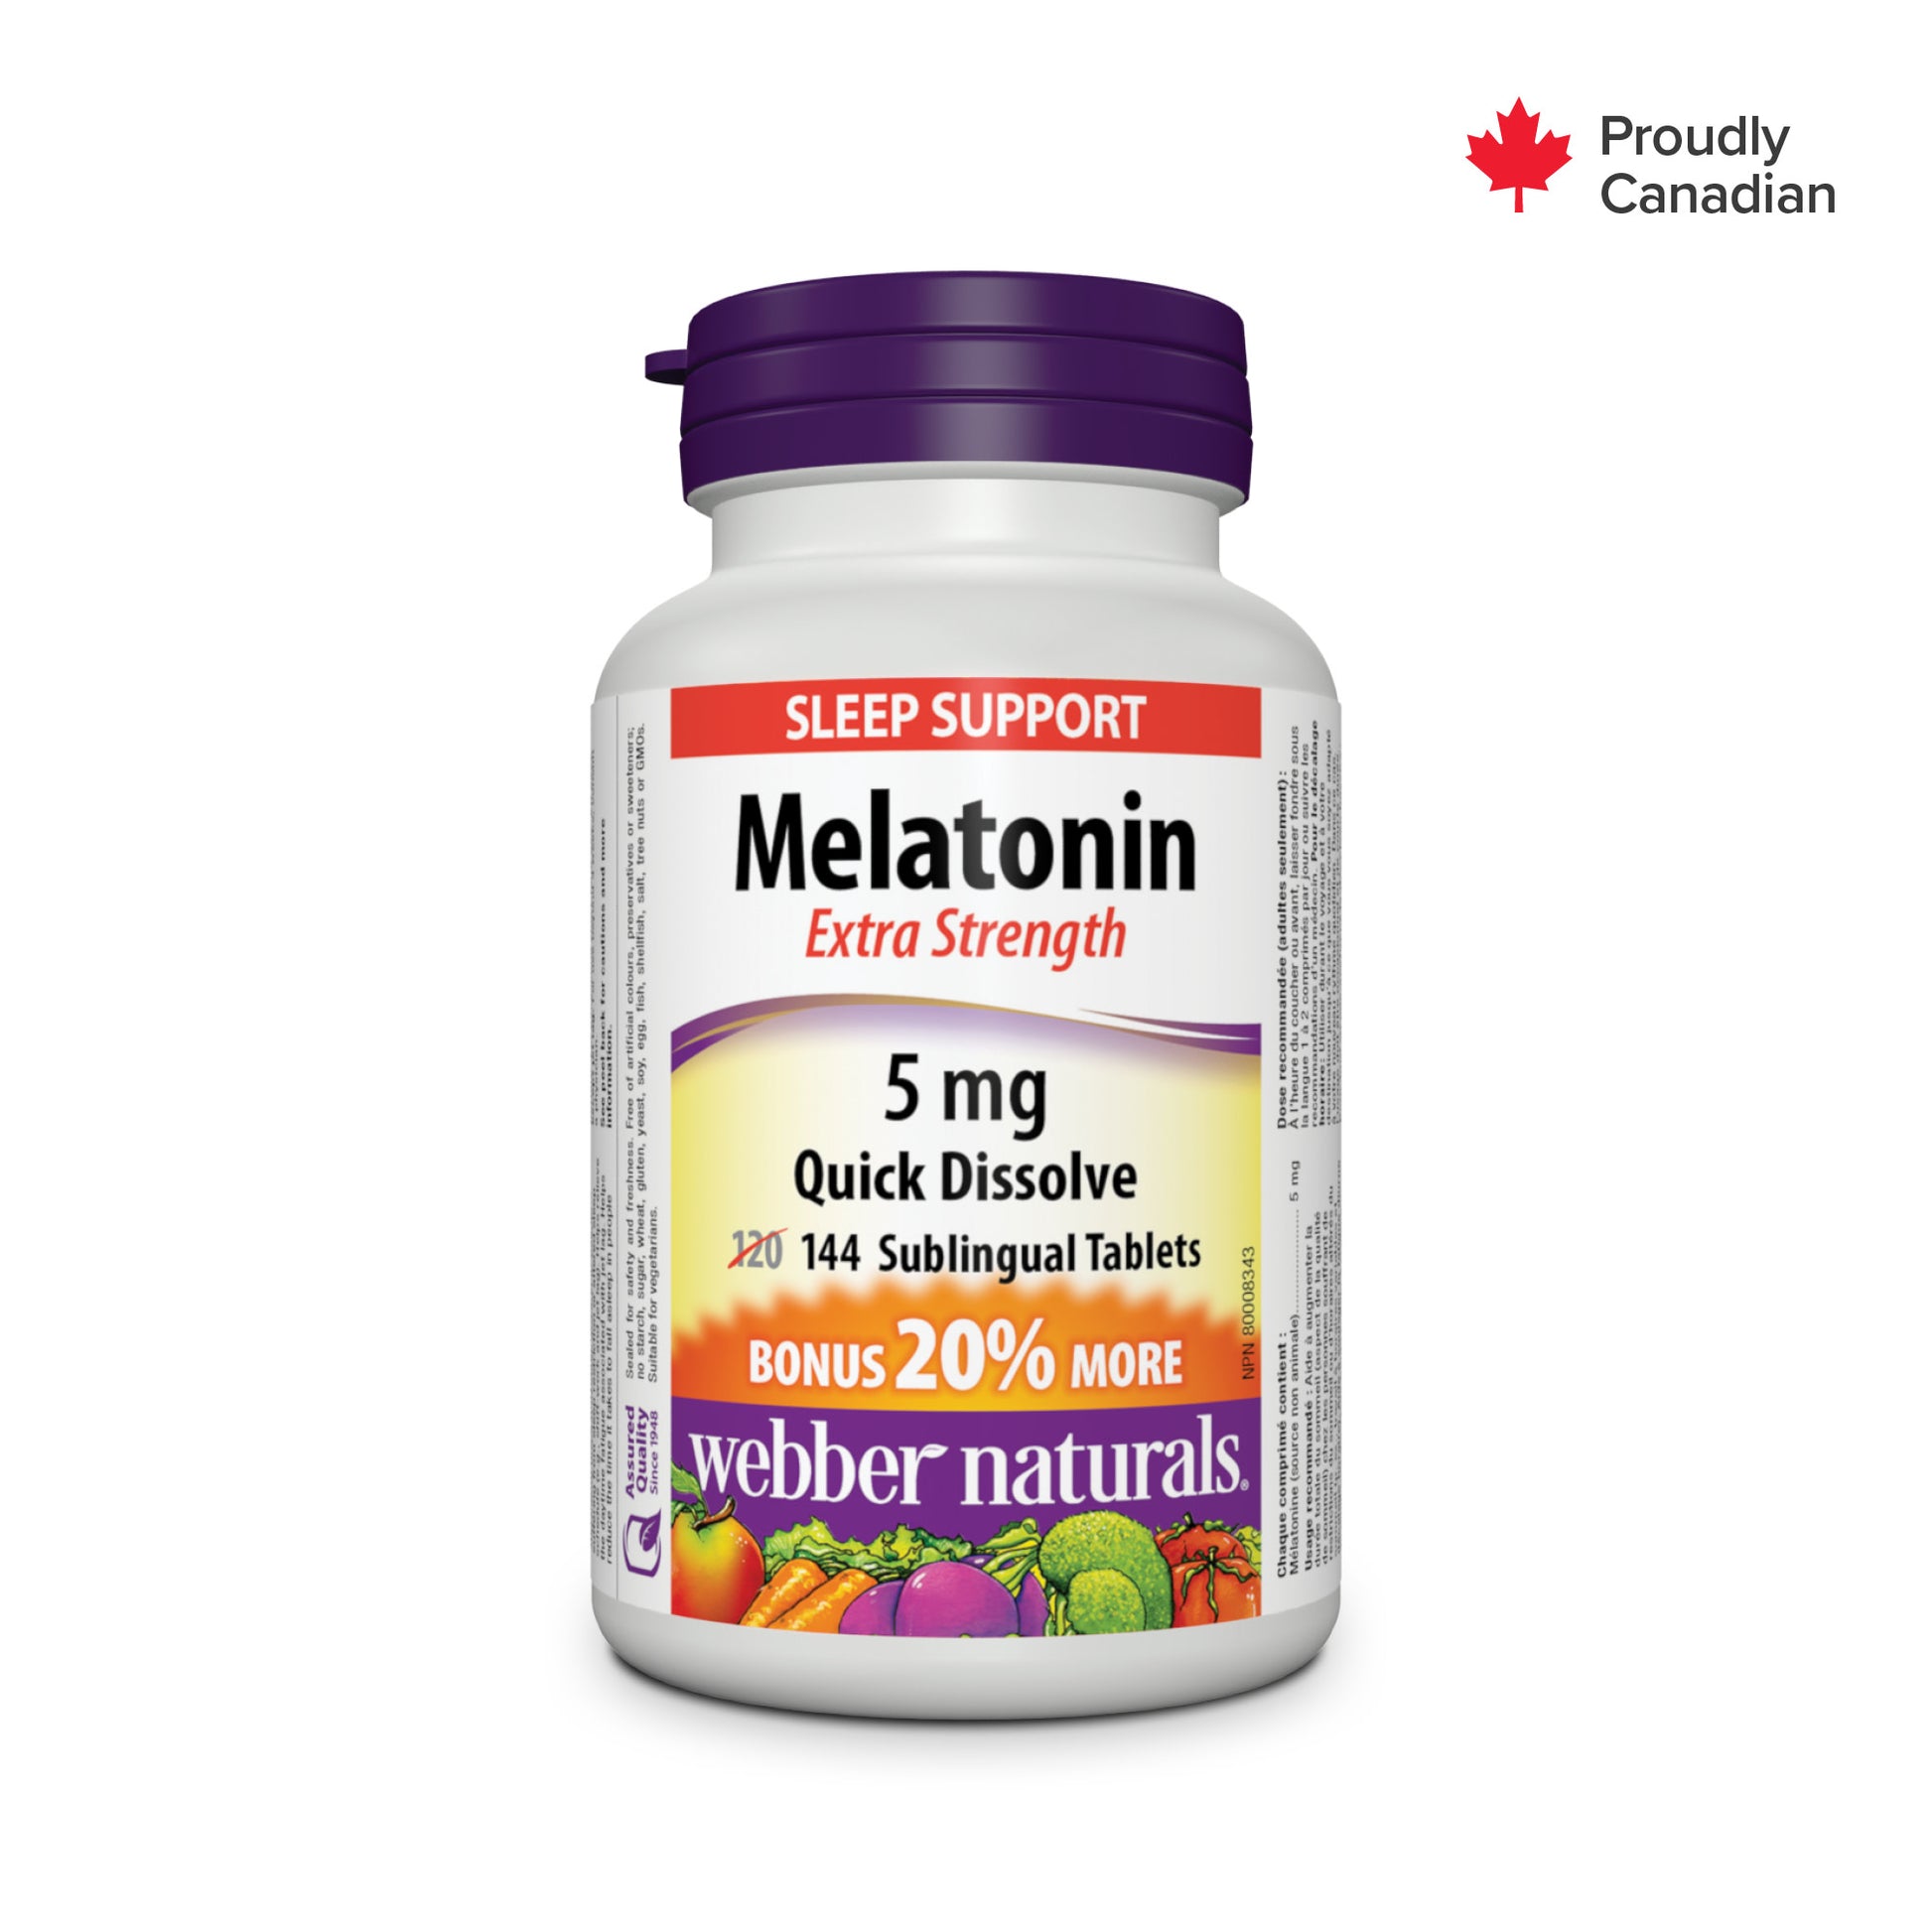 Mélatonine Ultra-fort Dissolution rapide 5 mg for Webber Naturals|v|hi-res|WN3826